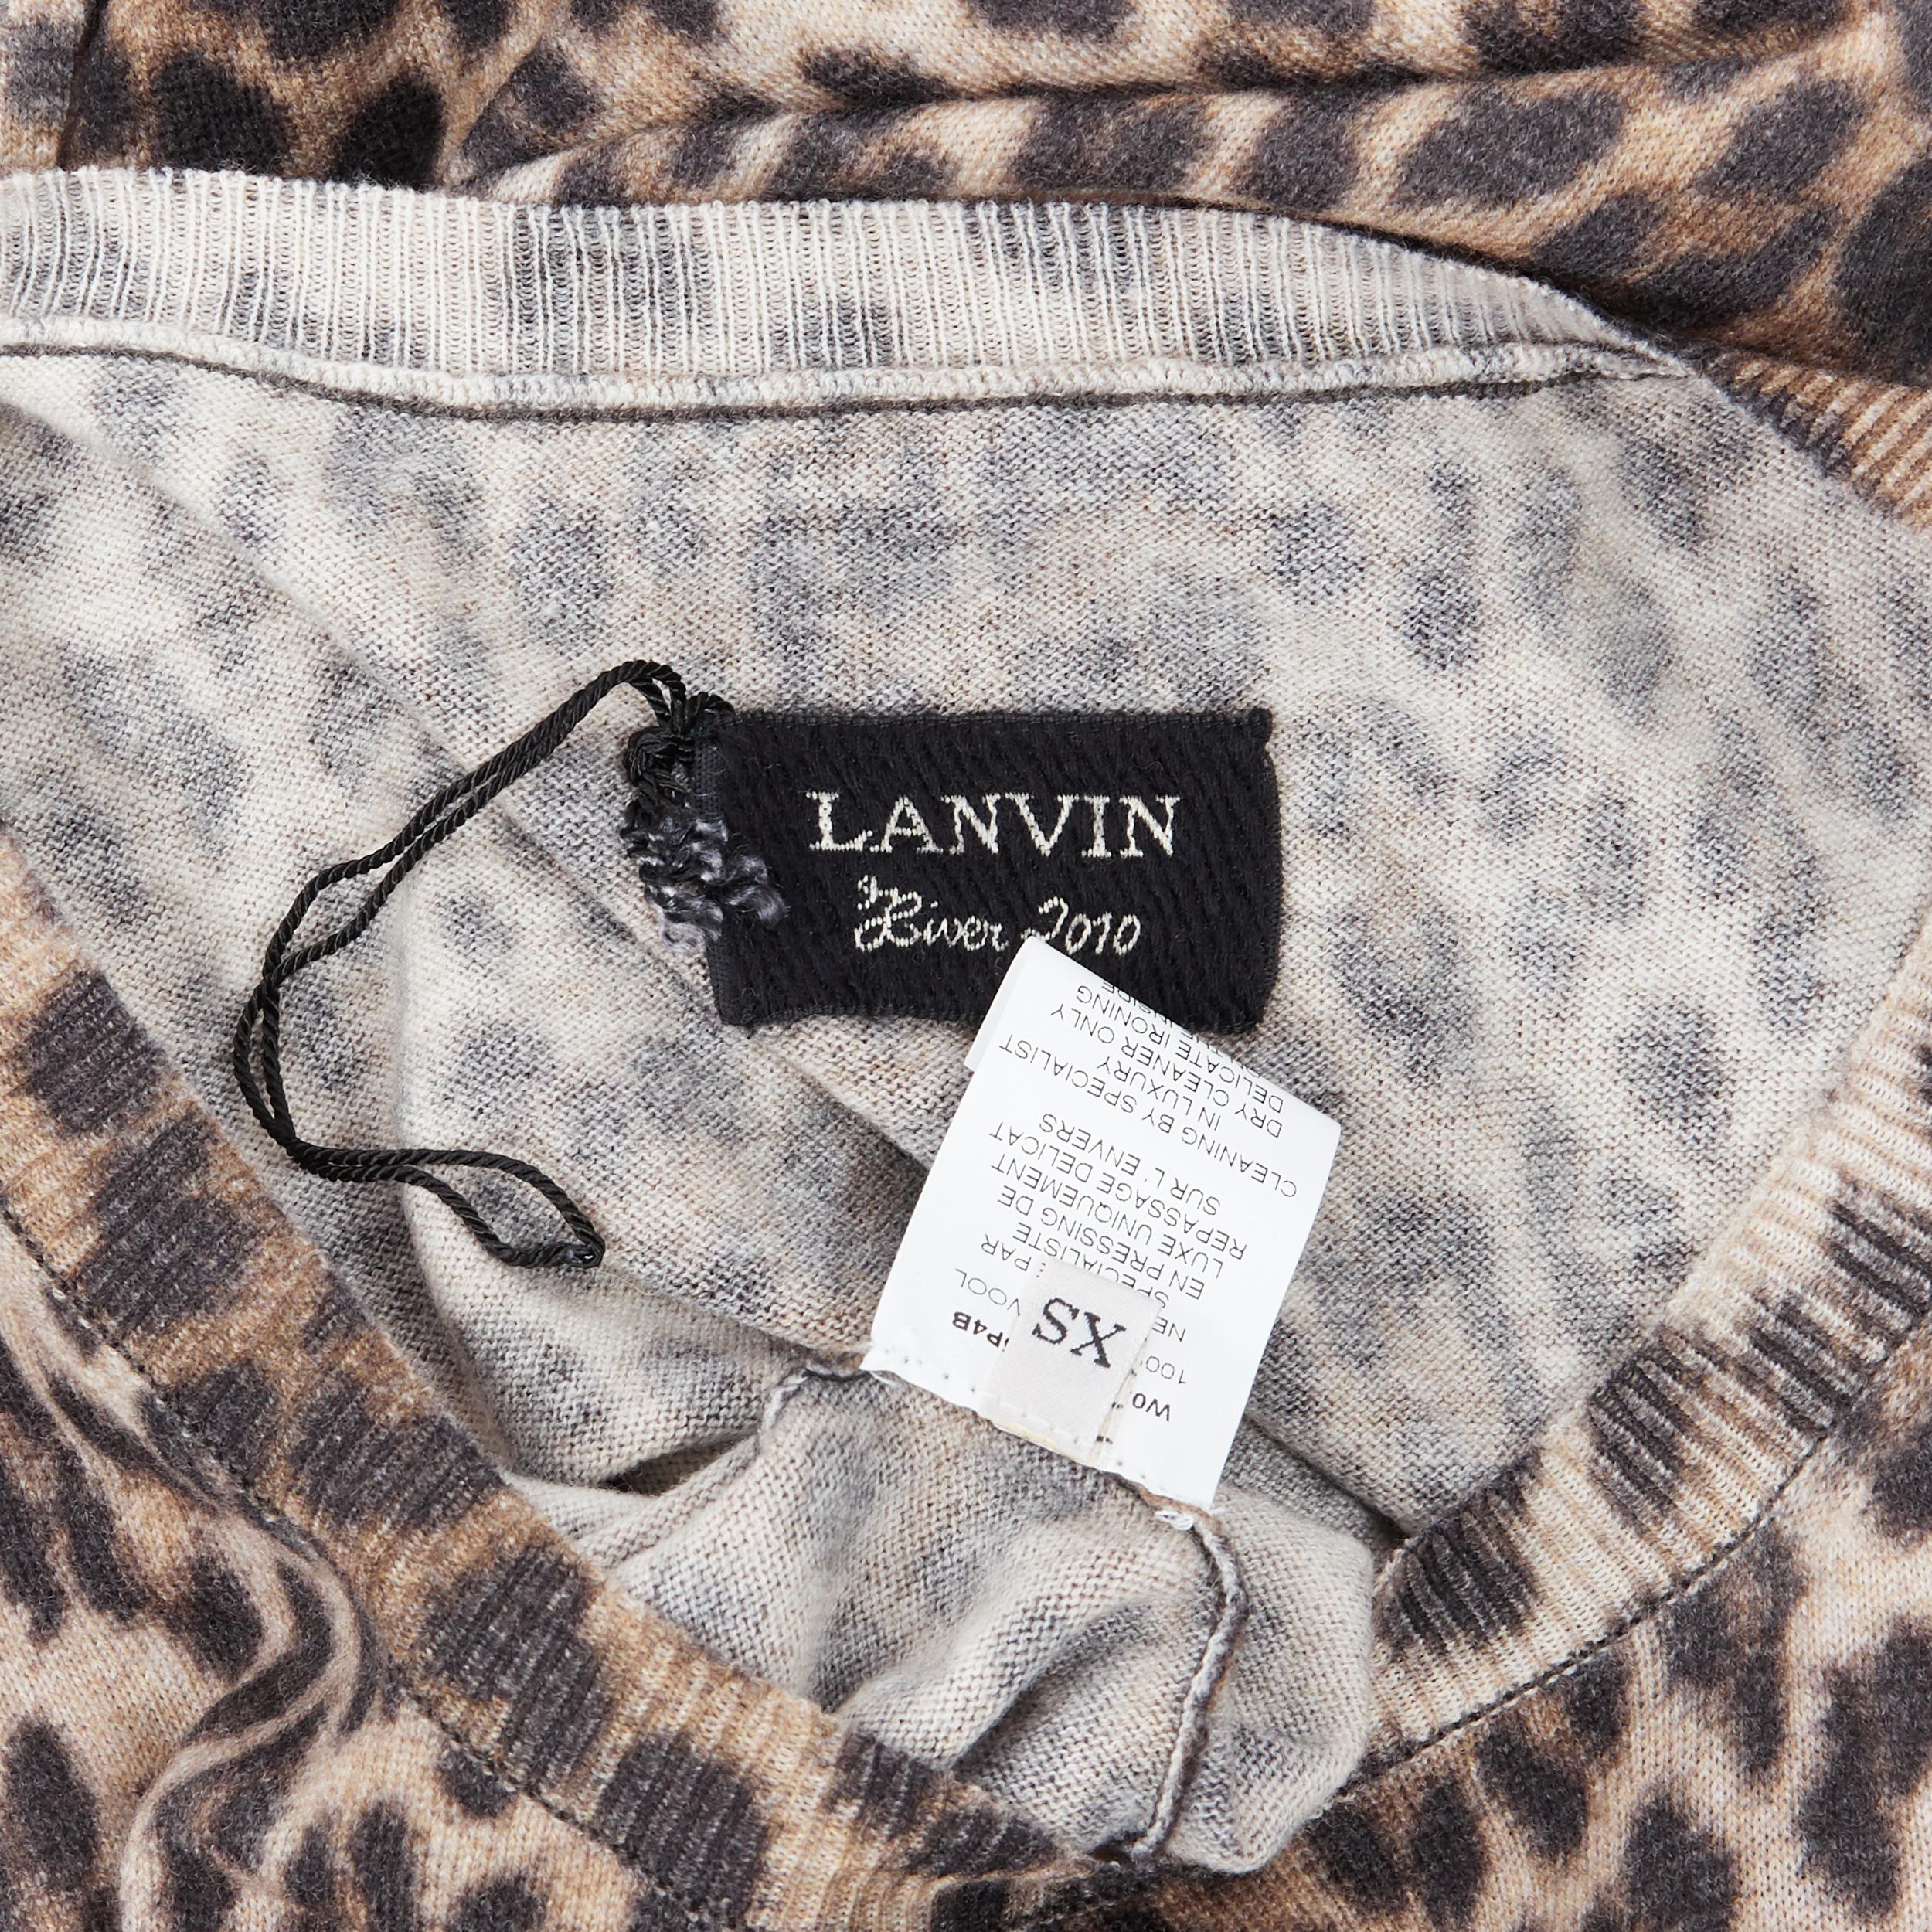 LANVIN ELBAZ 2010 100% wool brown leopard spot 3/4 sleeve knit sweater dress XS 3